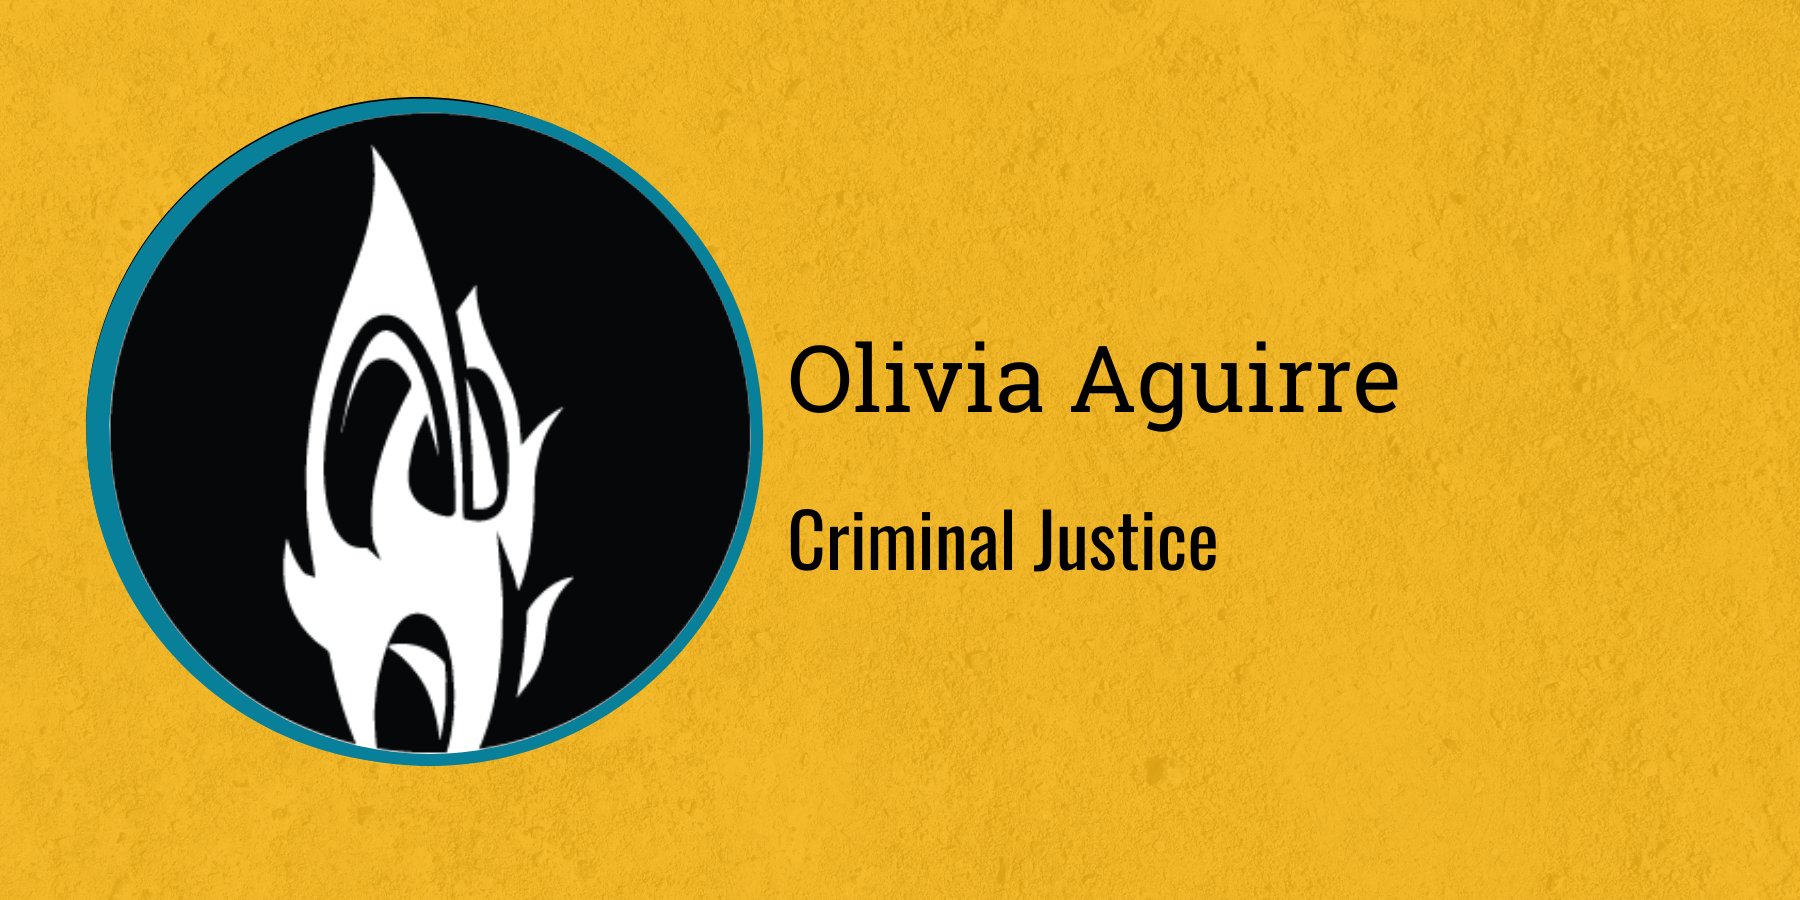 Olivia Aguirre
Criminal Justice